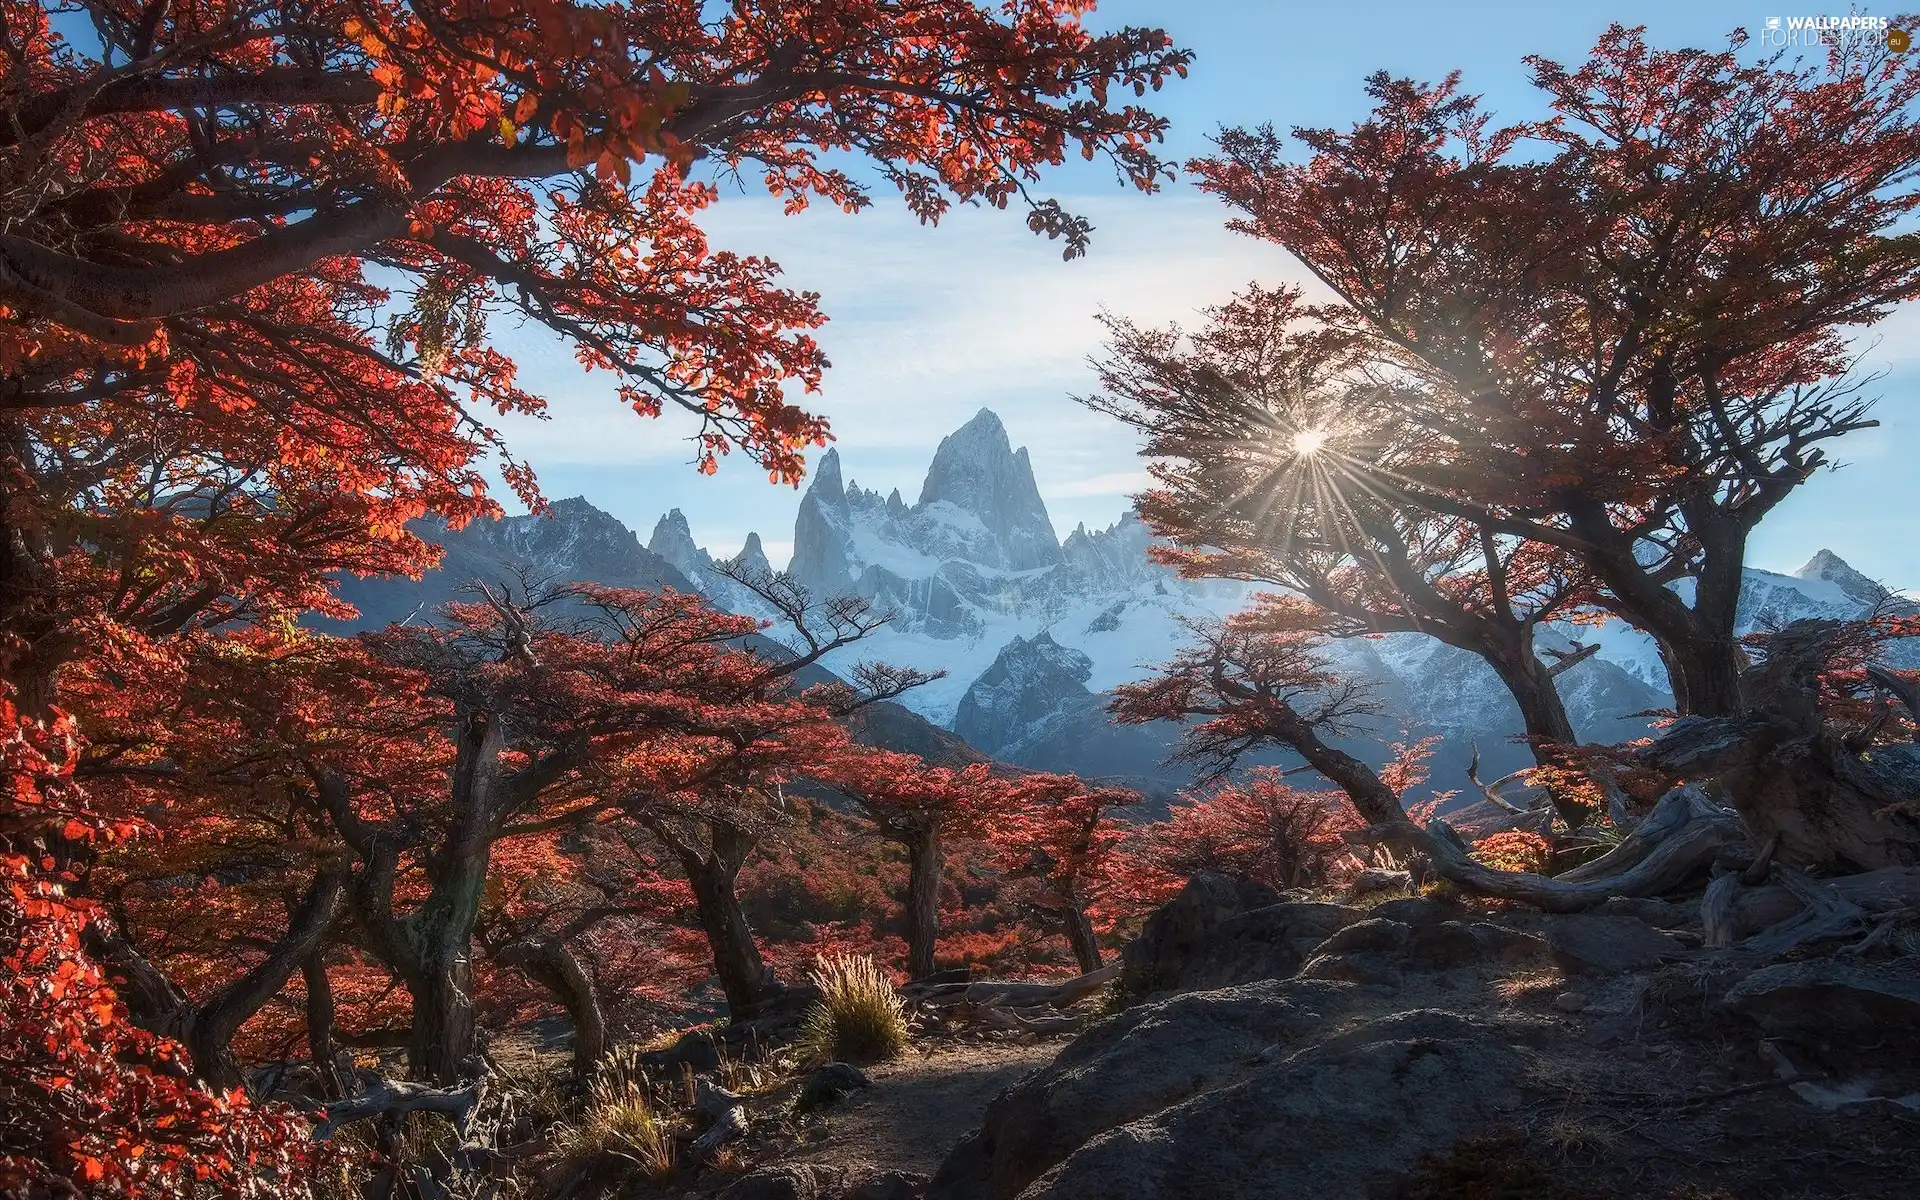 trees, Los Glaciares National Park, Patagonia, autumn, Fitz Roy Mountain, Argentina, Mountains, rays of the Sun, viewes, autumn